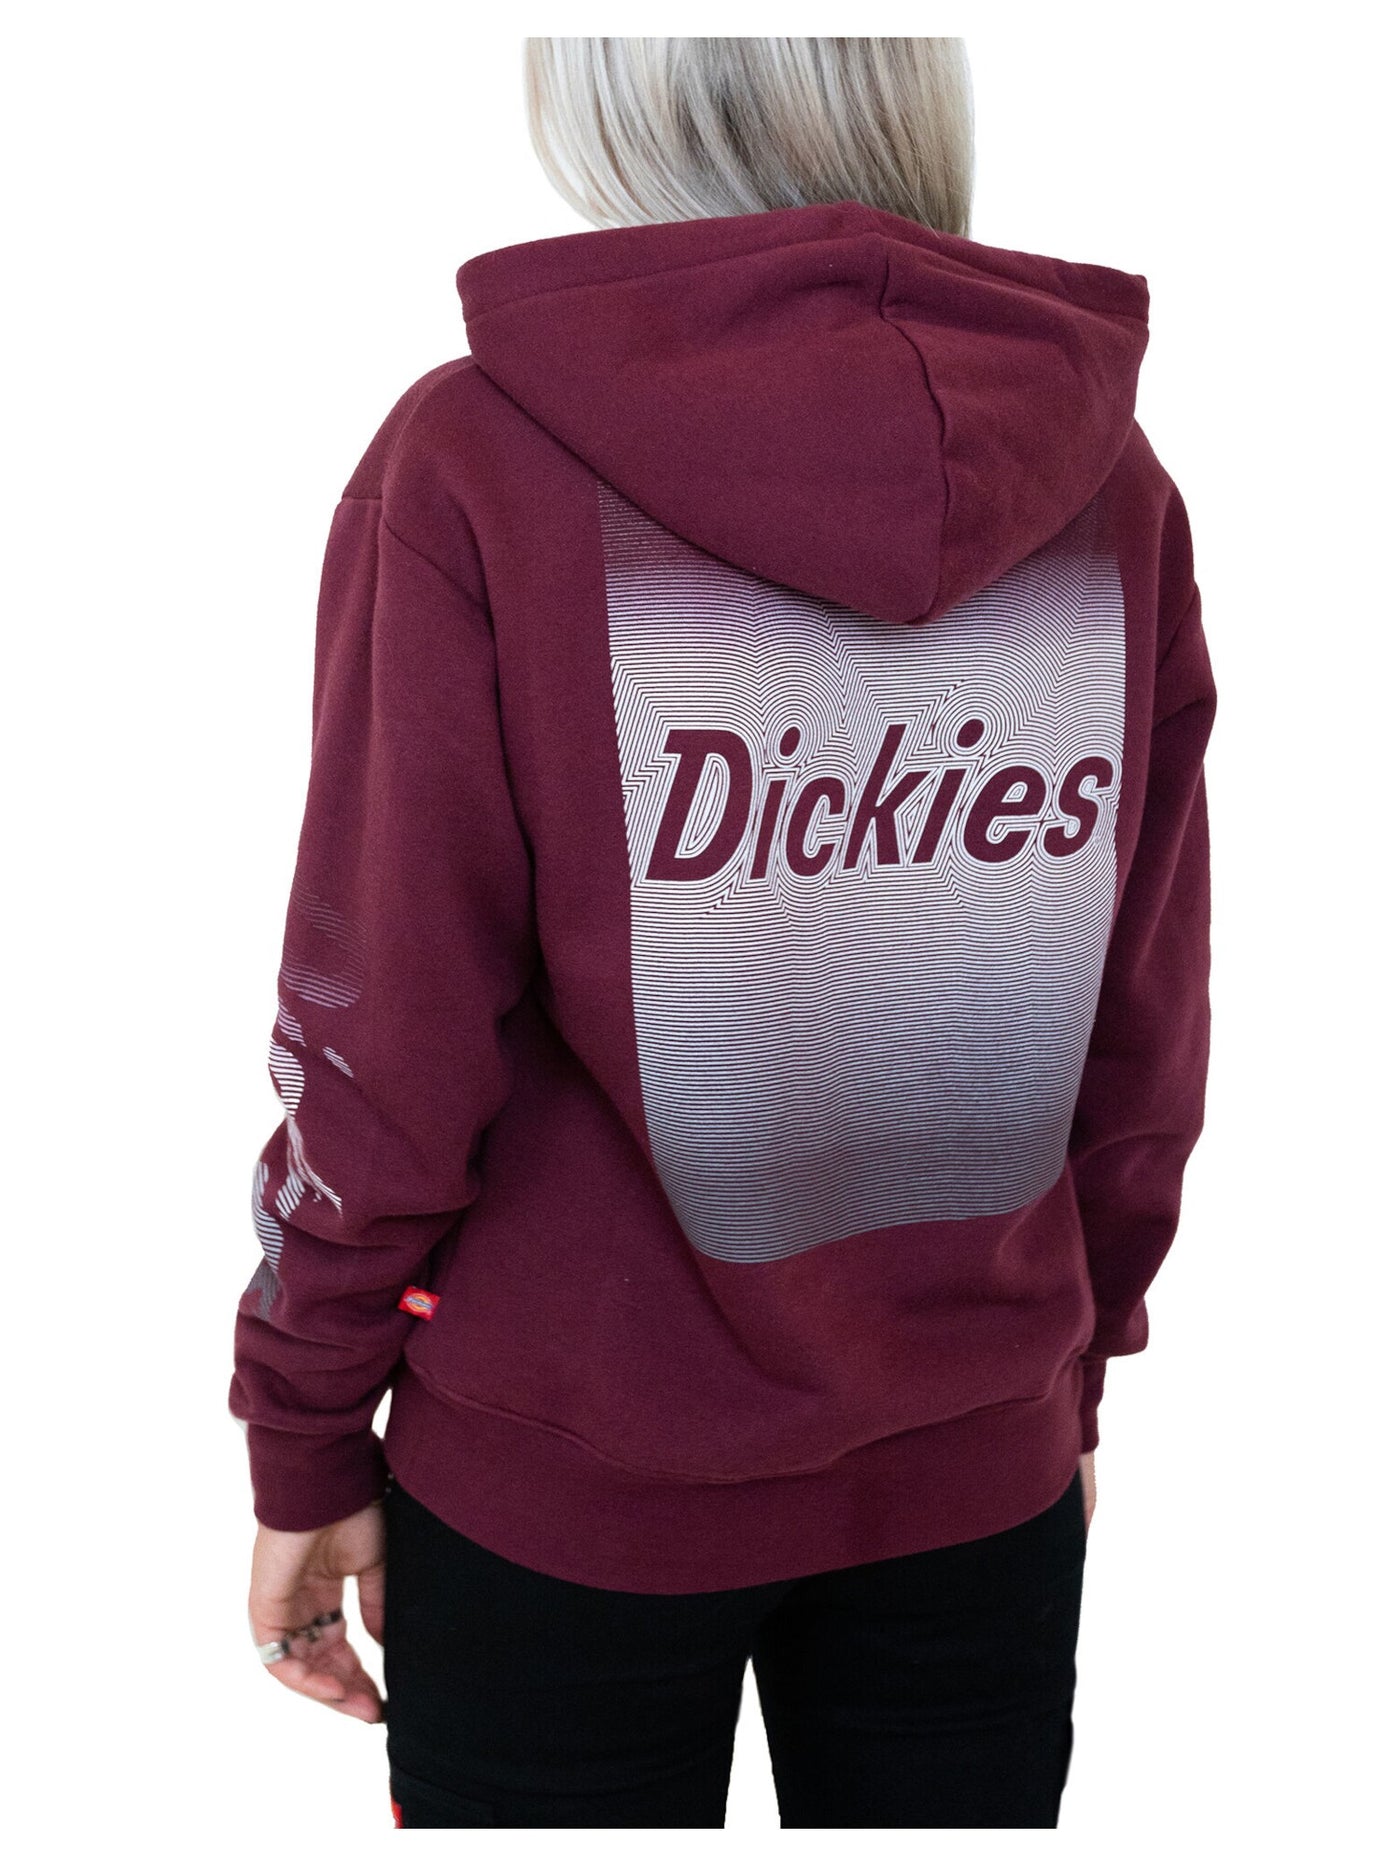 DICKIES Womens Maroon Printed Hoodie Top Juniors XS